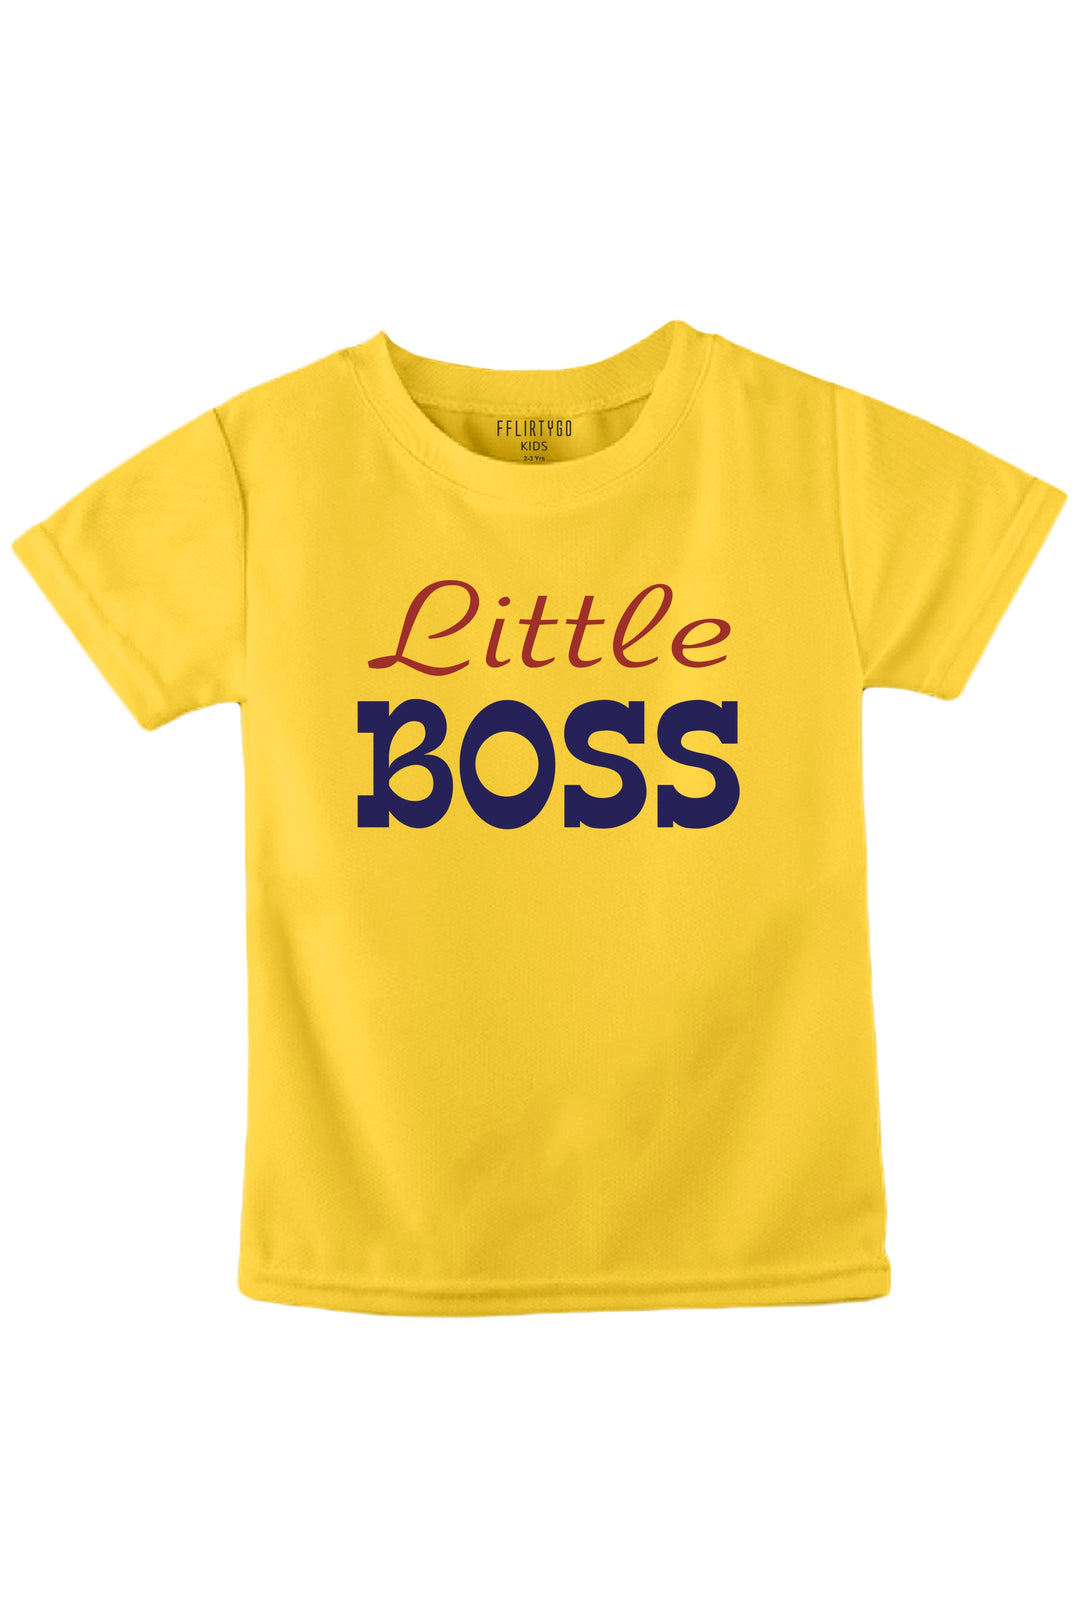 Little Boss KIDS T SHIRT